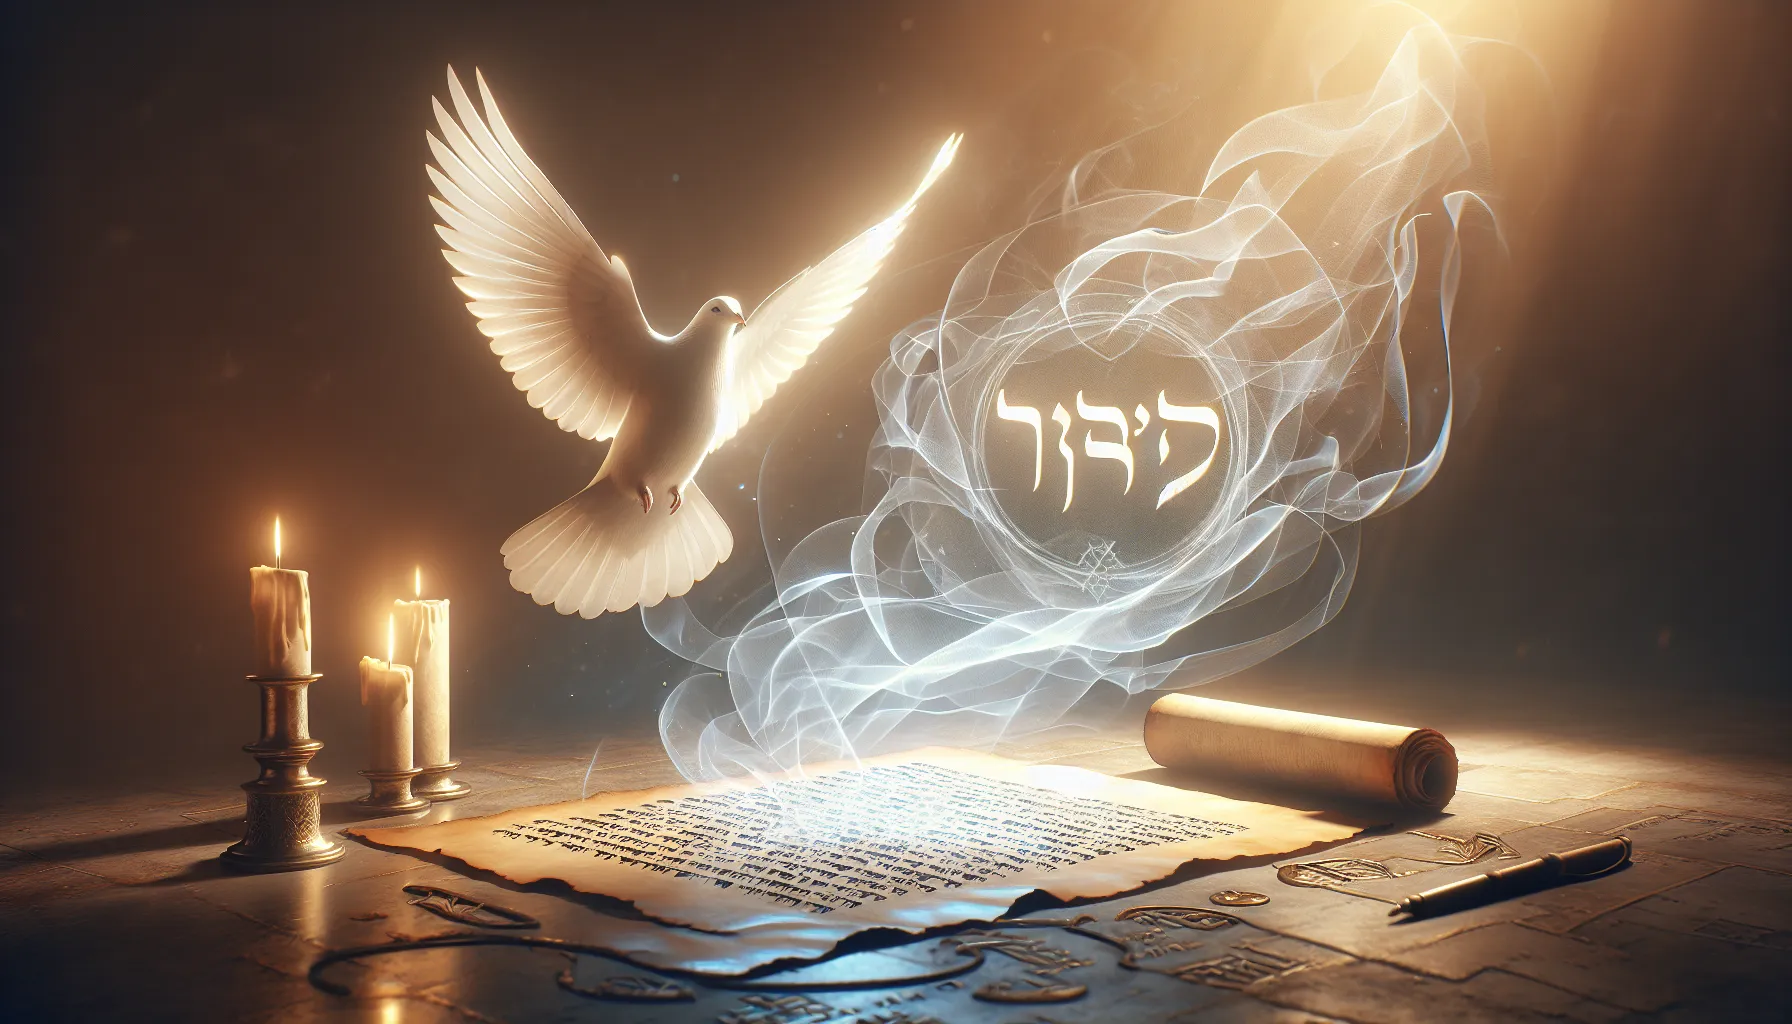 Representación visual de la palabra 'ruach' en hebreo y su conexión con el Espíritu Santo